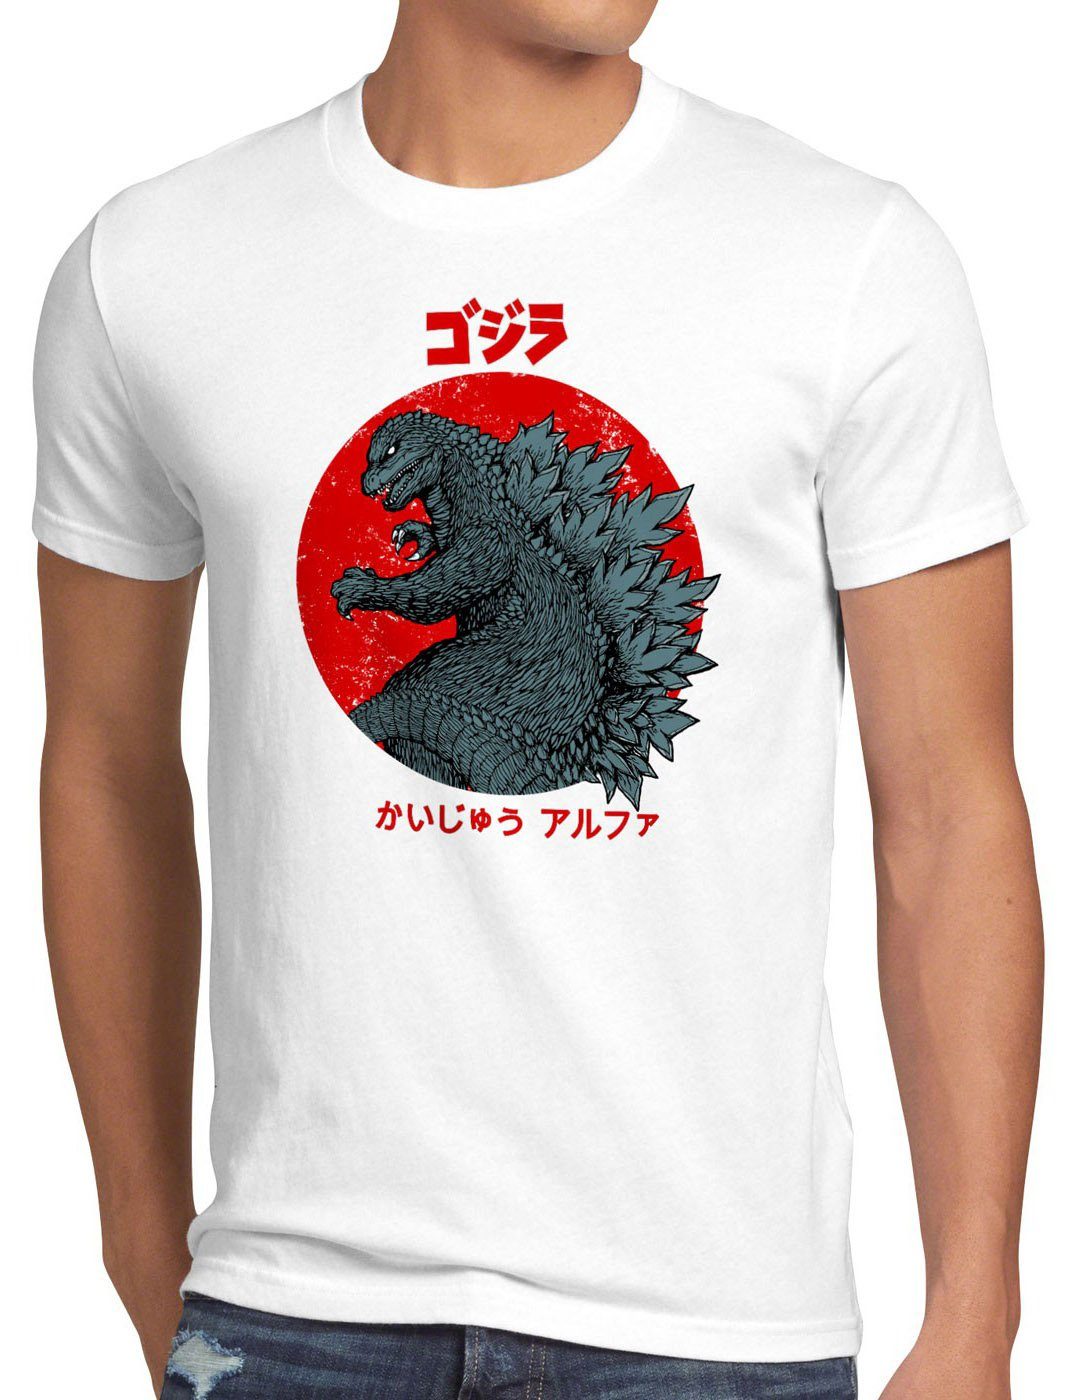 Print-Shirt film tokyo Herren kino style3 weiß kanji Gojira kaiju monster japan blu-ray T-Shirt nippon